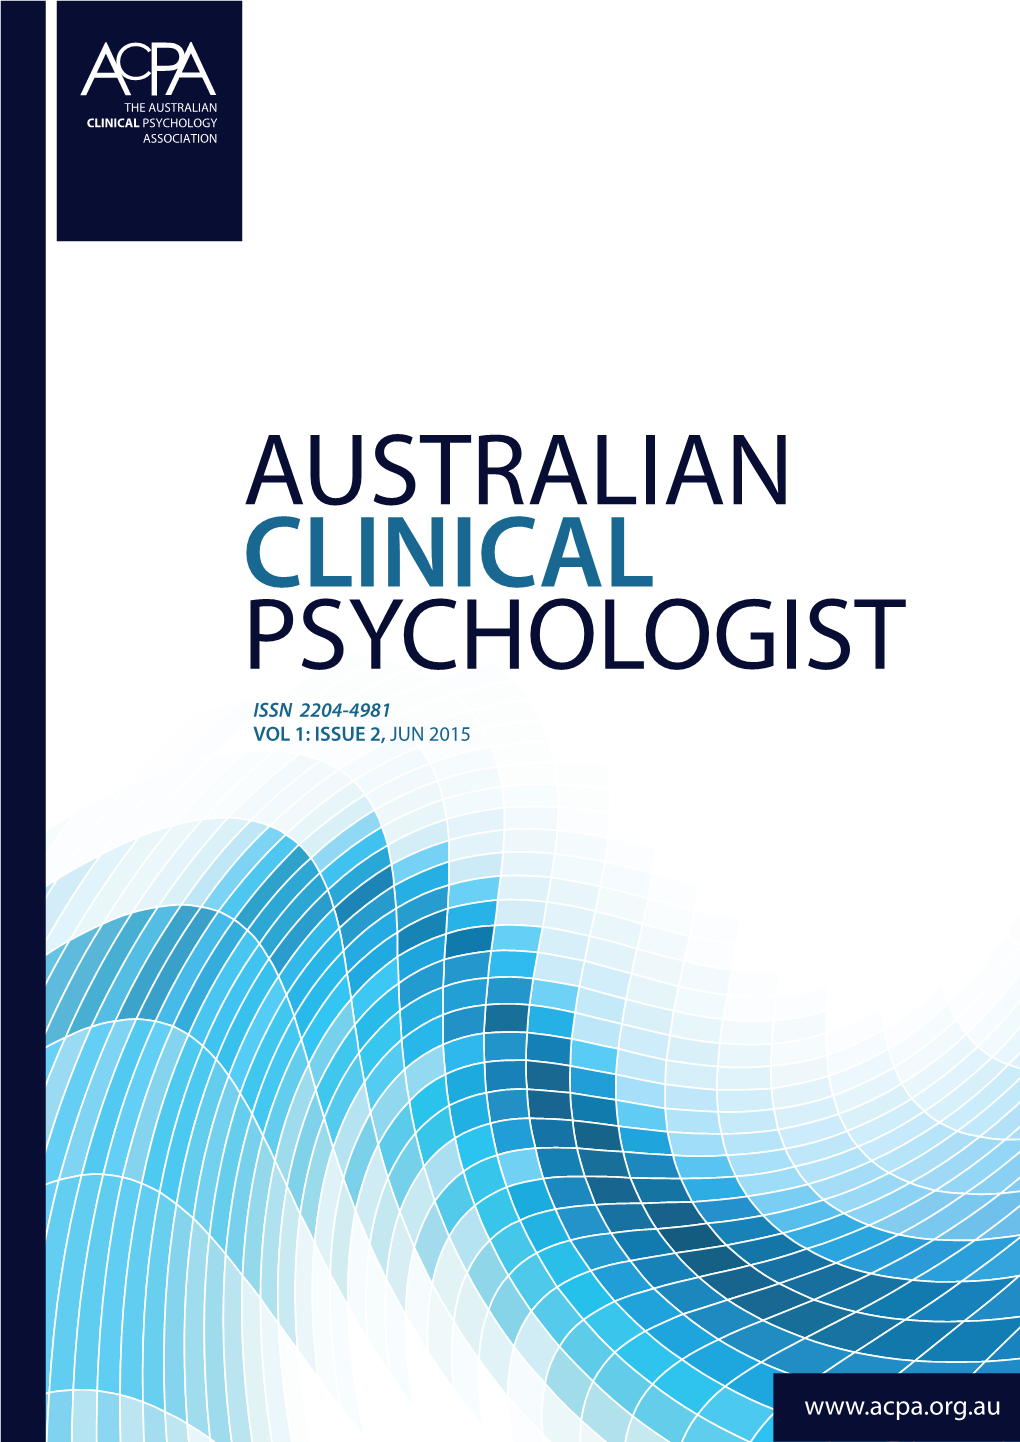 Australian Clinical Psychologist Issn 2204-4981 Vol 1: Issue 2, Jun 2015